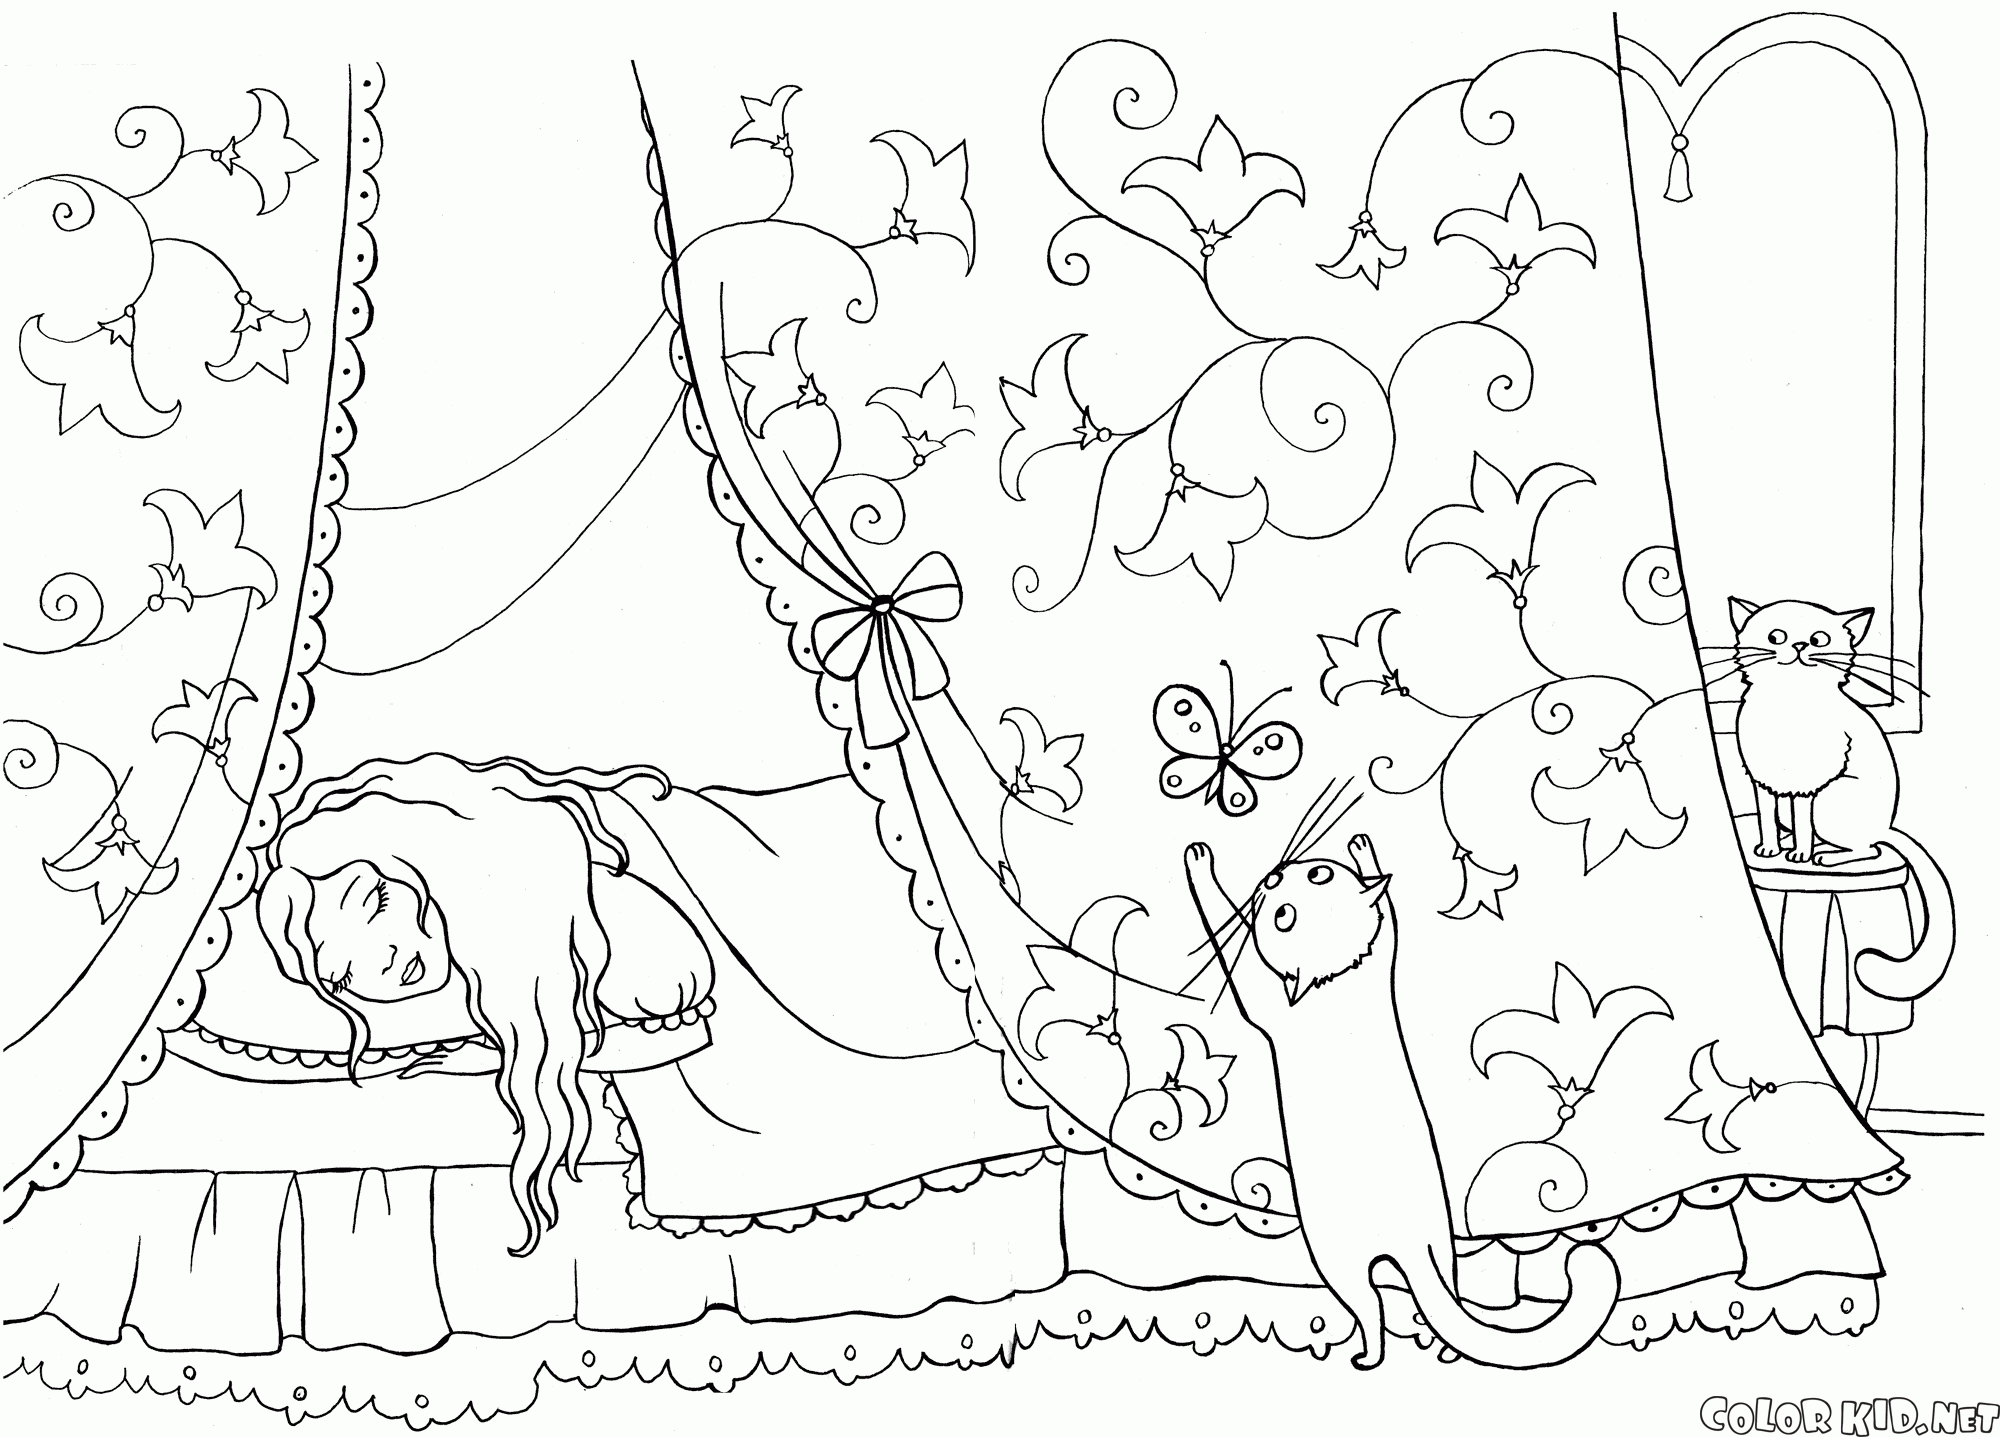 プリンセス眠れる森